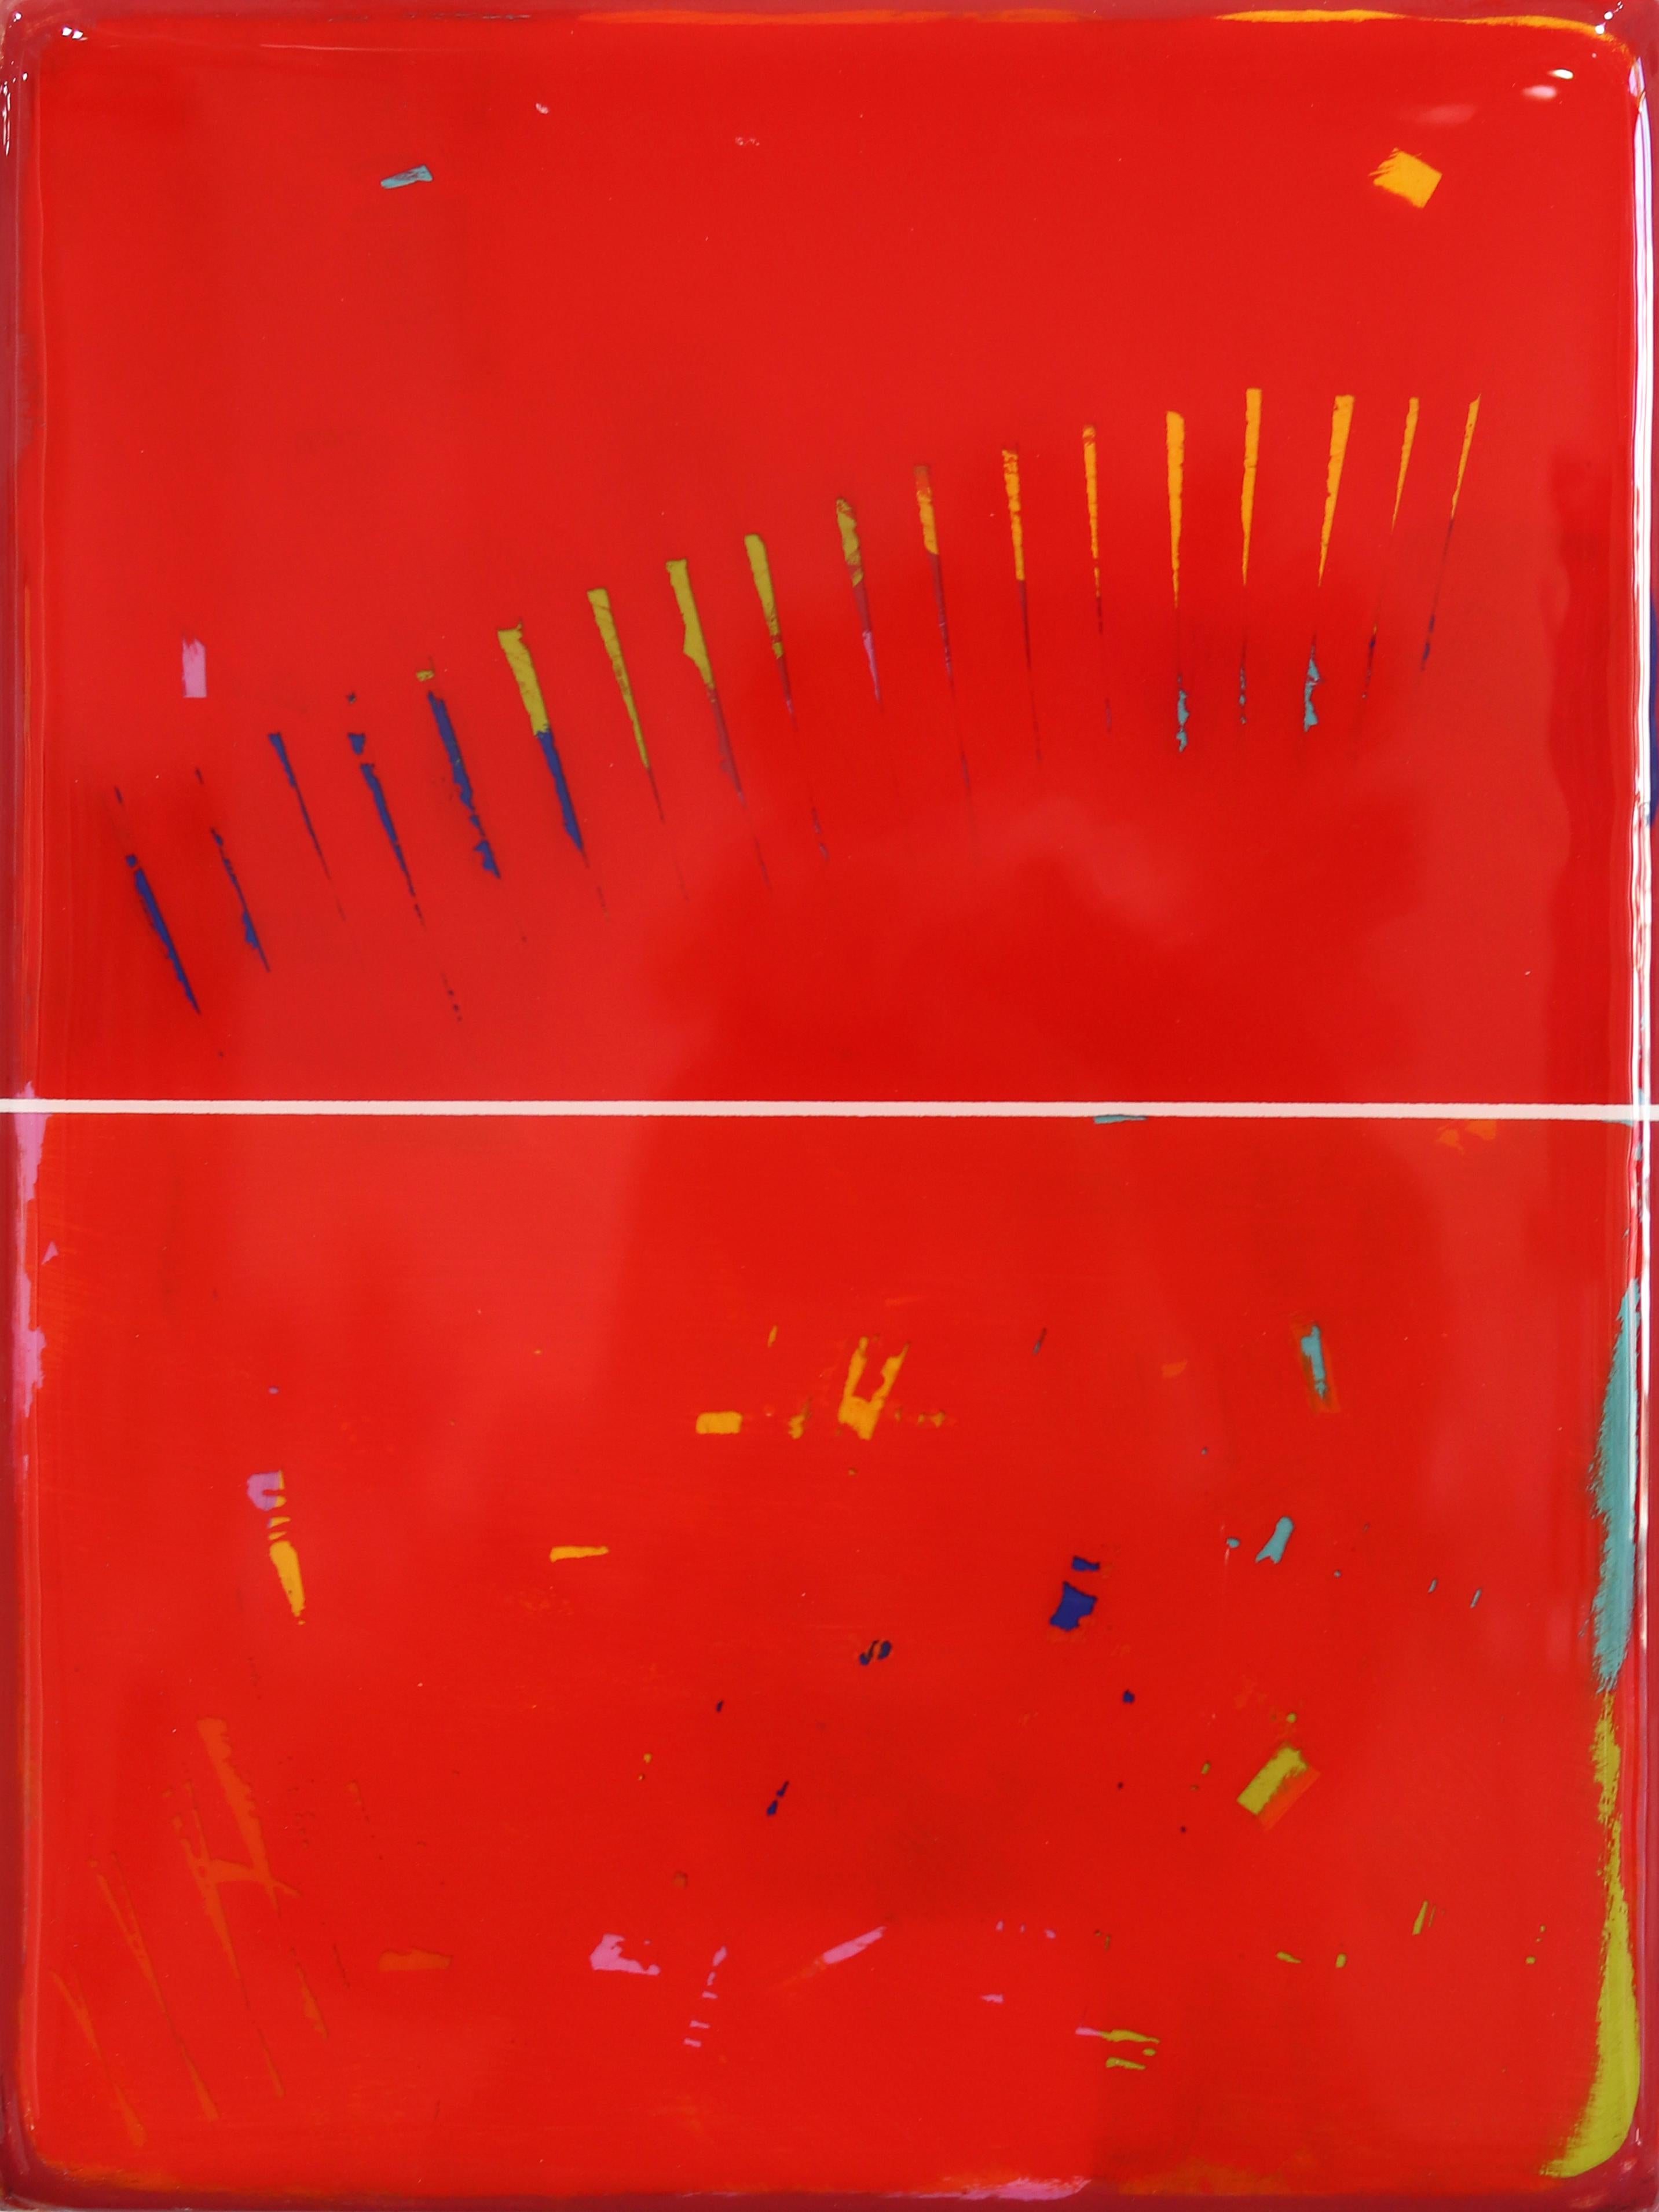 Abstract Painting Ricky Hunt - The Window 277 - Oeuvre d'art moderne et minimaliste en résine rouge à deux tons